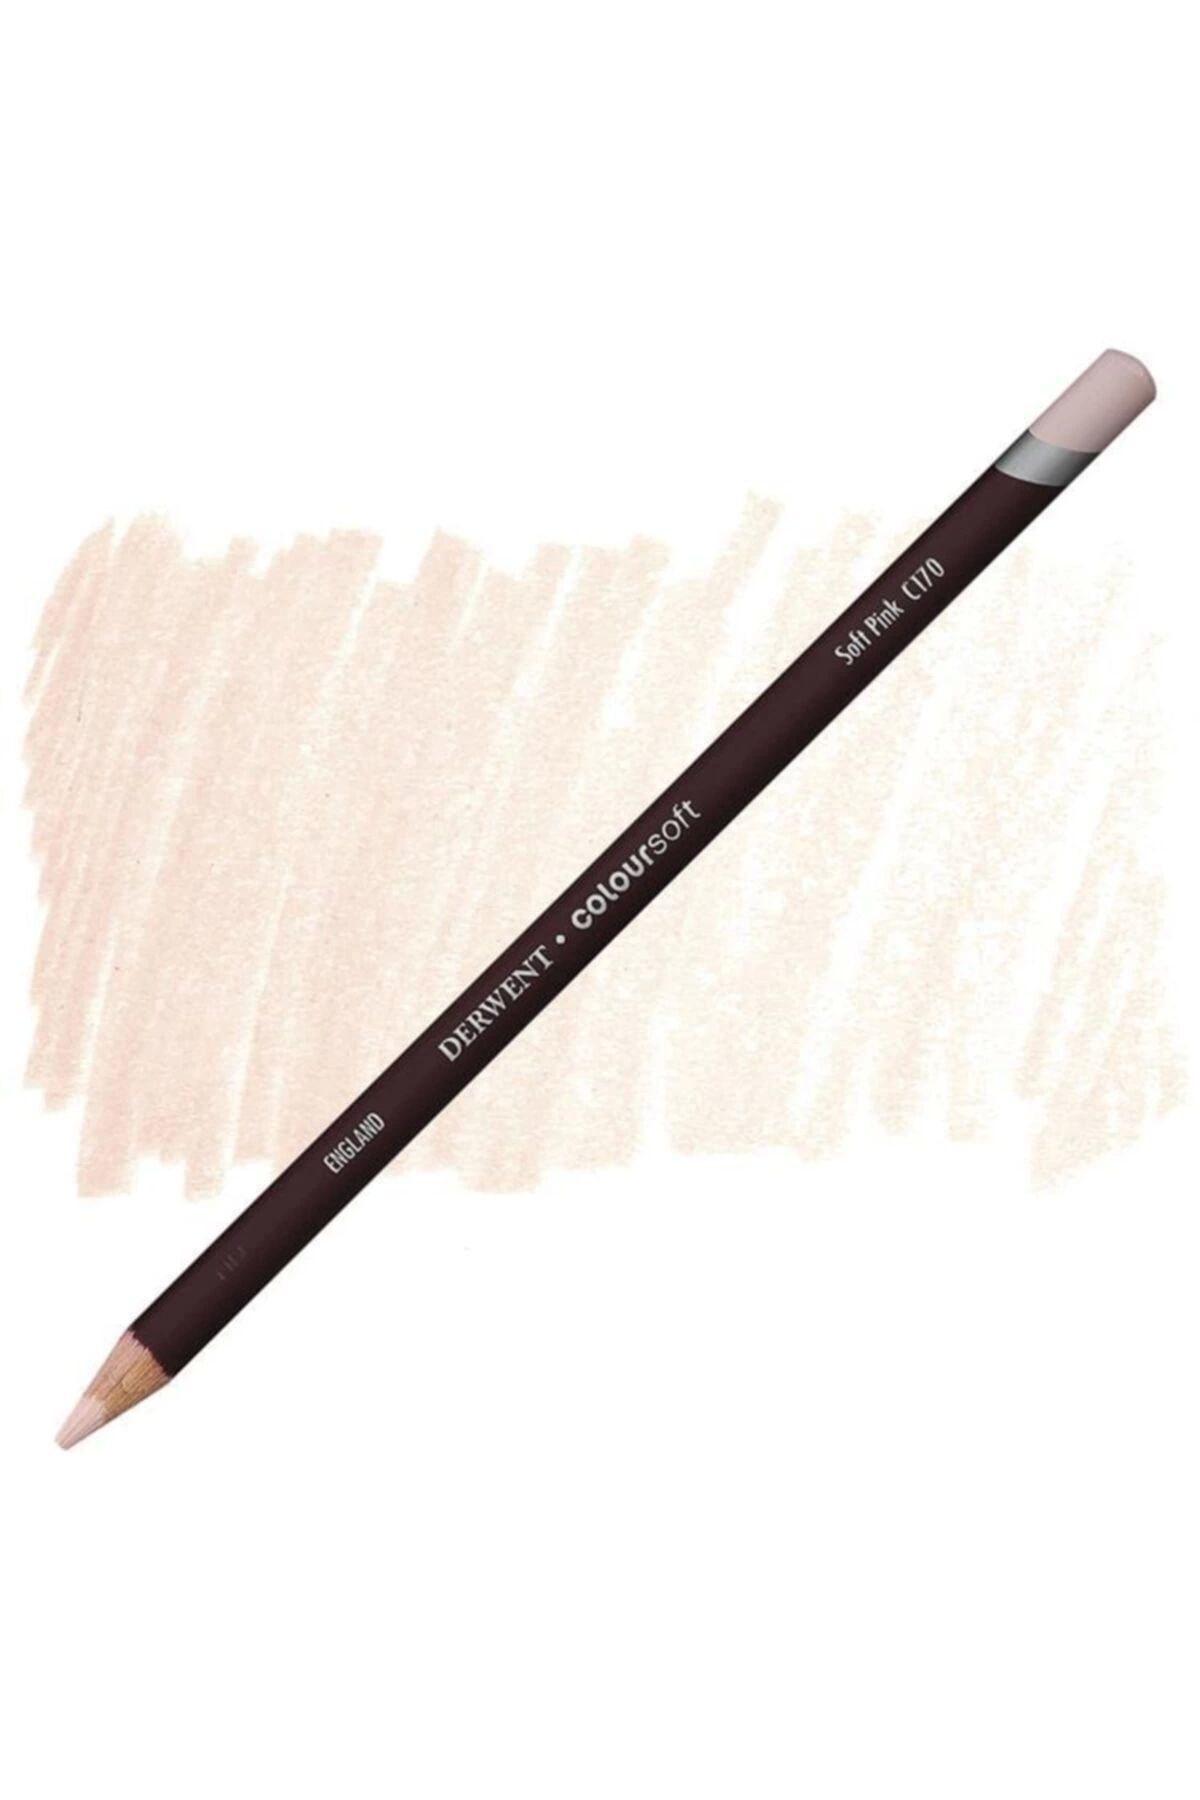 Derwent Coloursoft - Soft Color Pen Pink C170 340084178